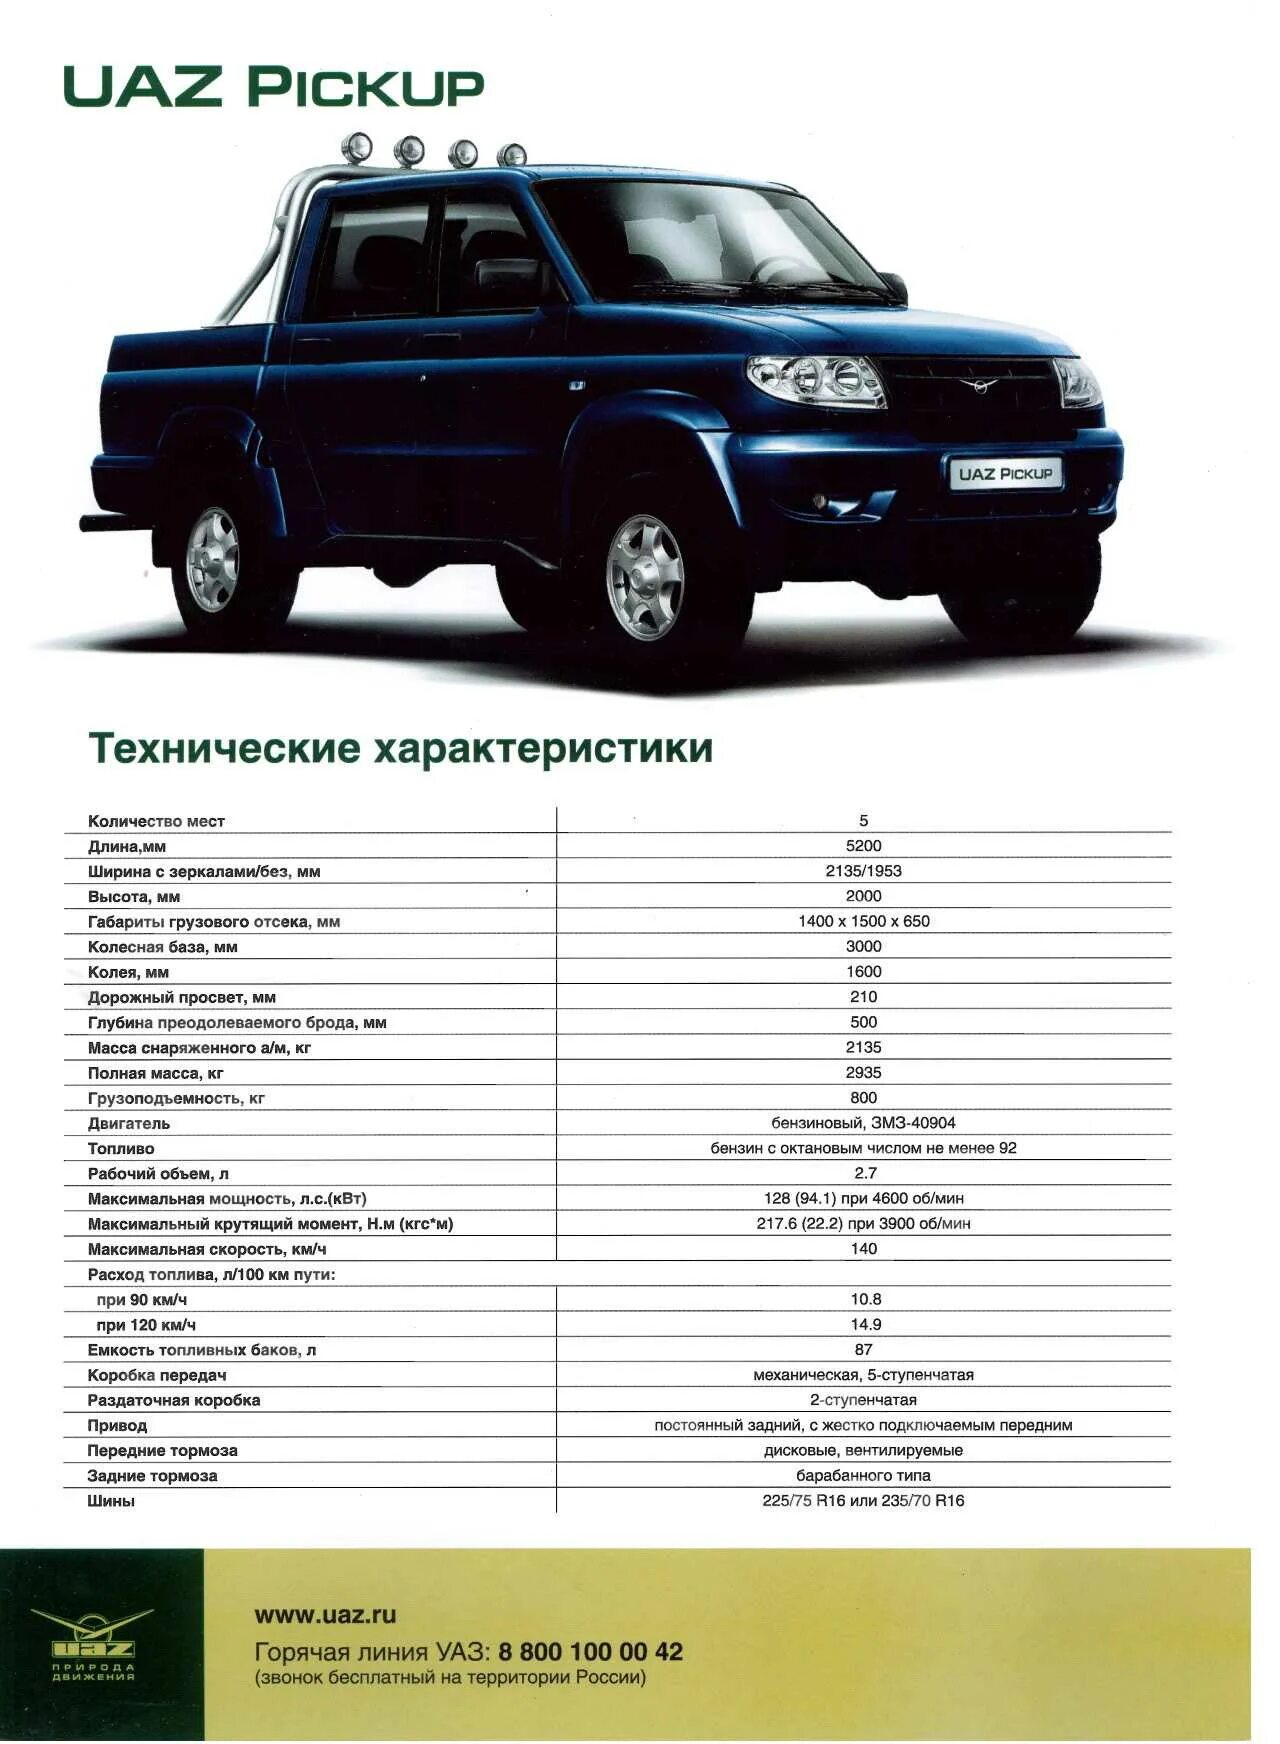 УАЗ Патриот технические характеристики характеристики. ТТХ УАЗ 3163. УАЗ Патриот 2014 технические характеристики. Колесная база УАЗ Патриот 2012.